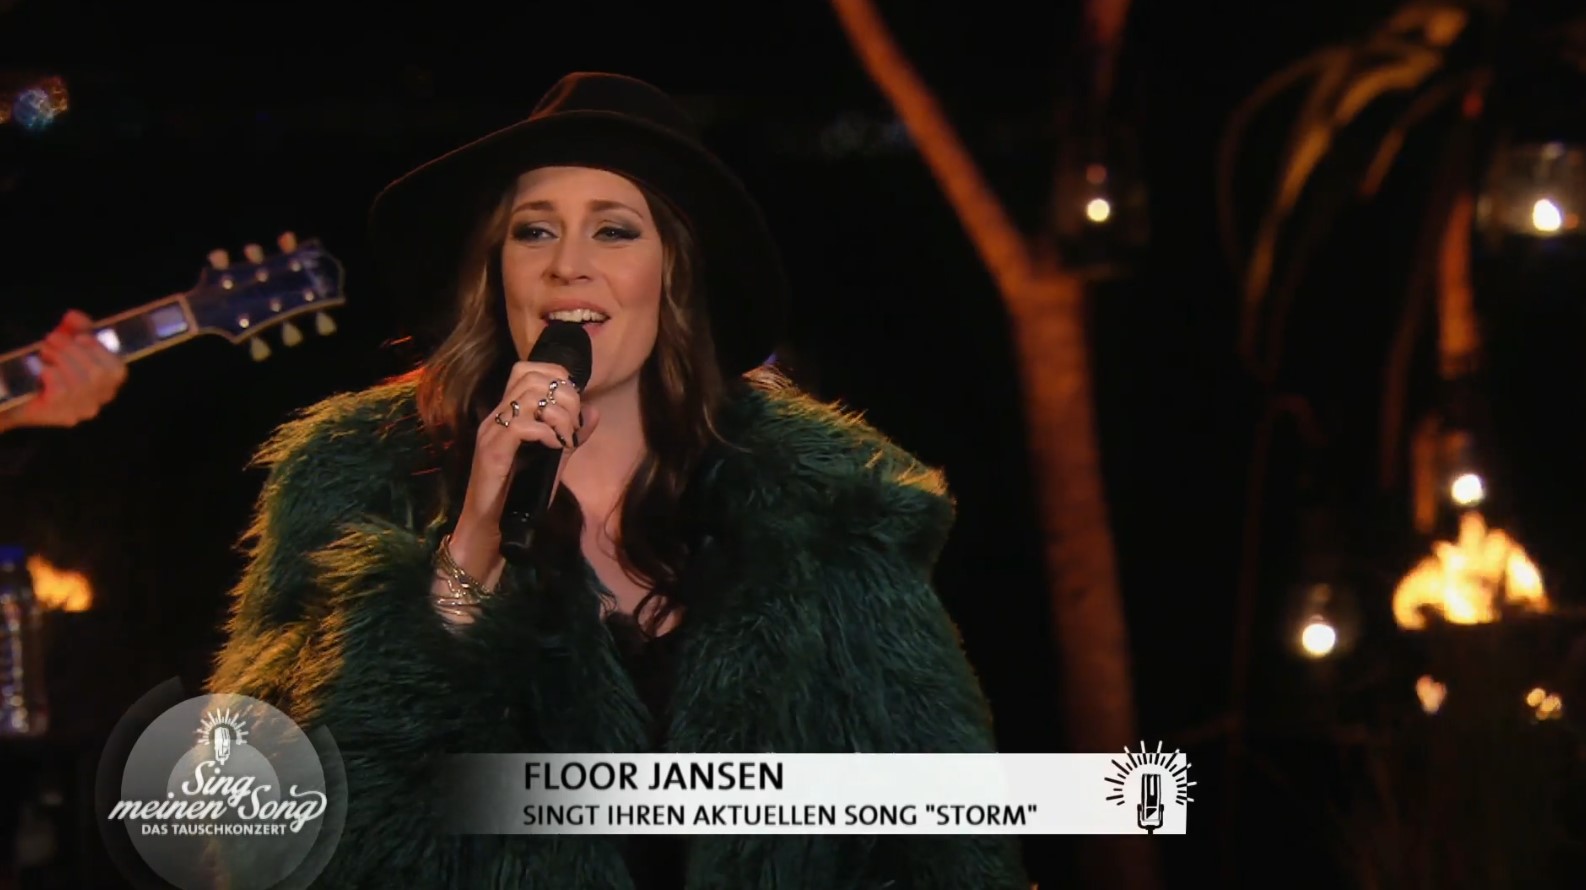 Floor Jansen zing 'Storm' in Sing meinen Song